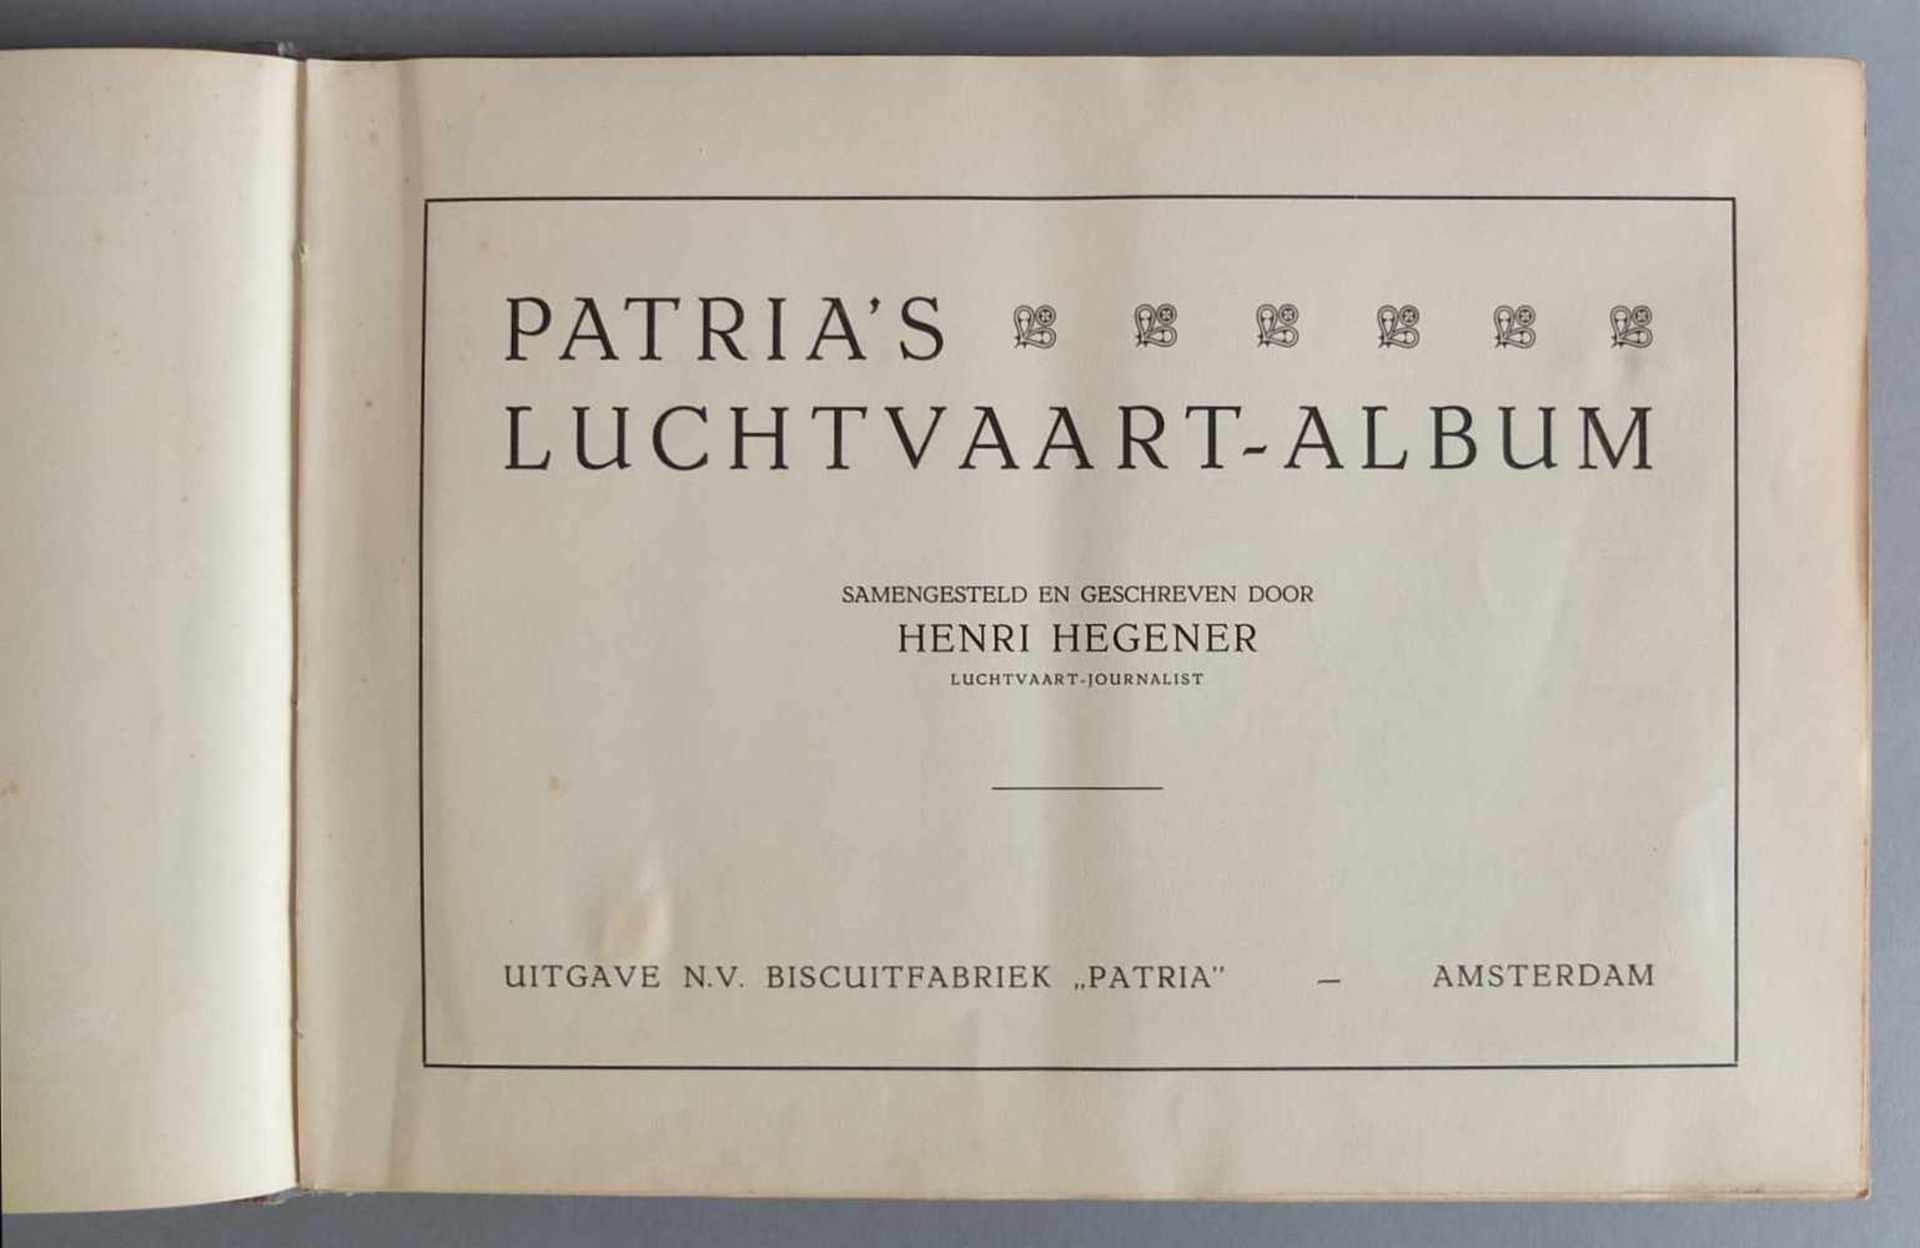 SAMMELALBUM, Patria´s Luchtvaartalbum, Henri Hegener, Amsterdam, 1936, geprägter Leineneinband, - Image 2 of 6